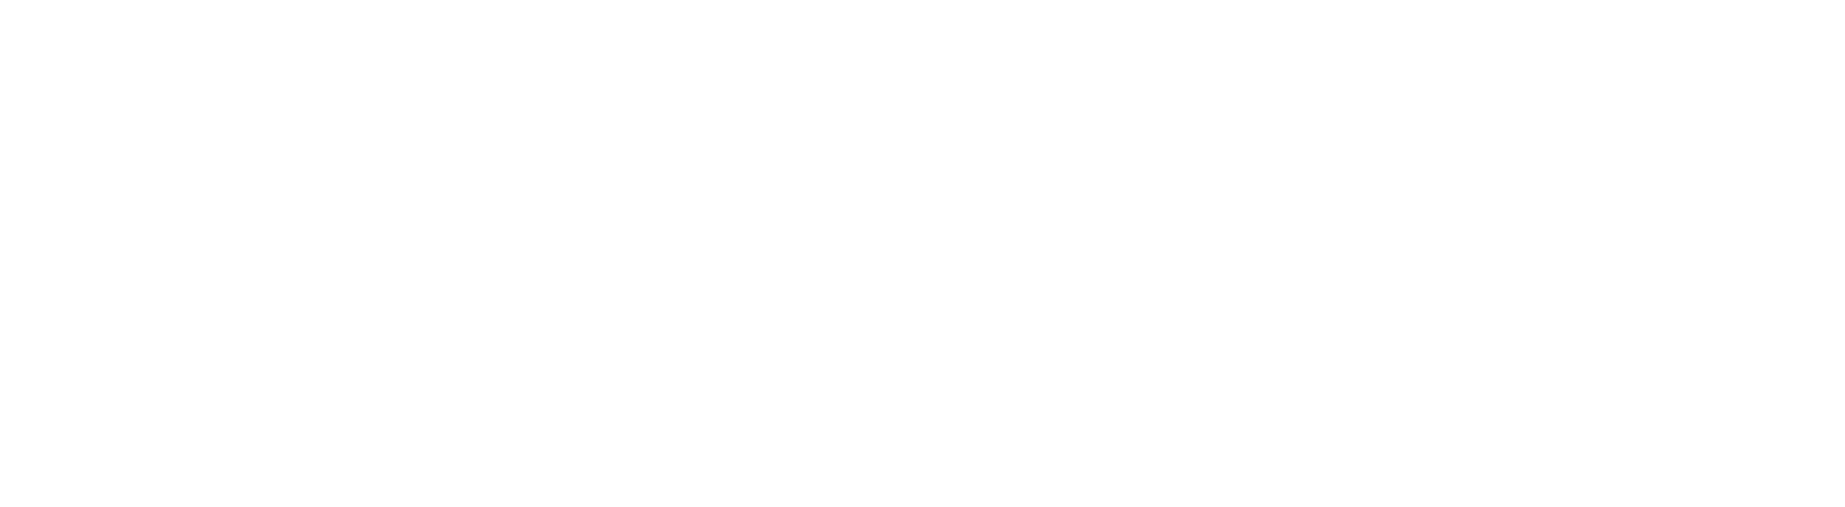 XMII CONSULTING | Digital Manufacturing